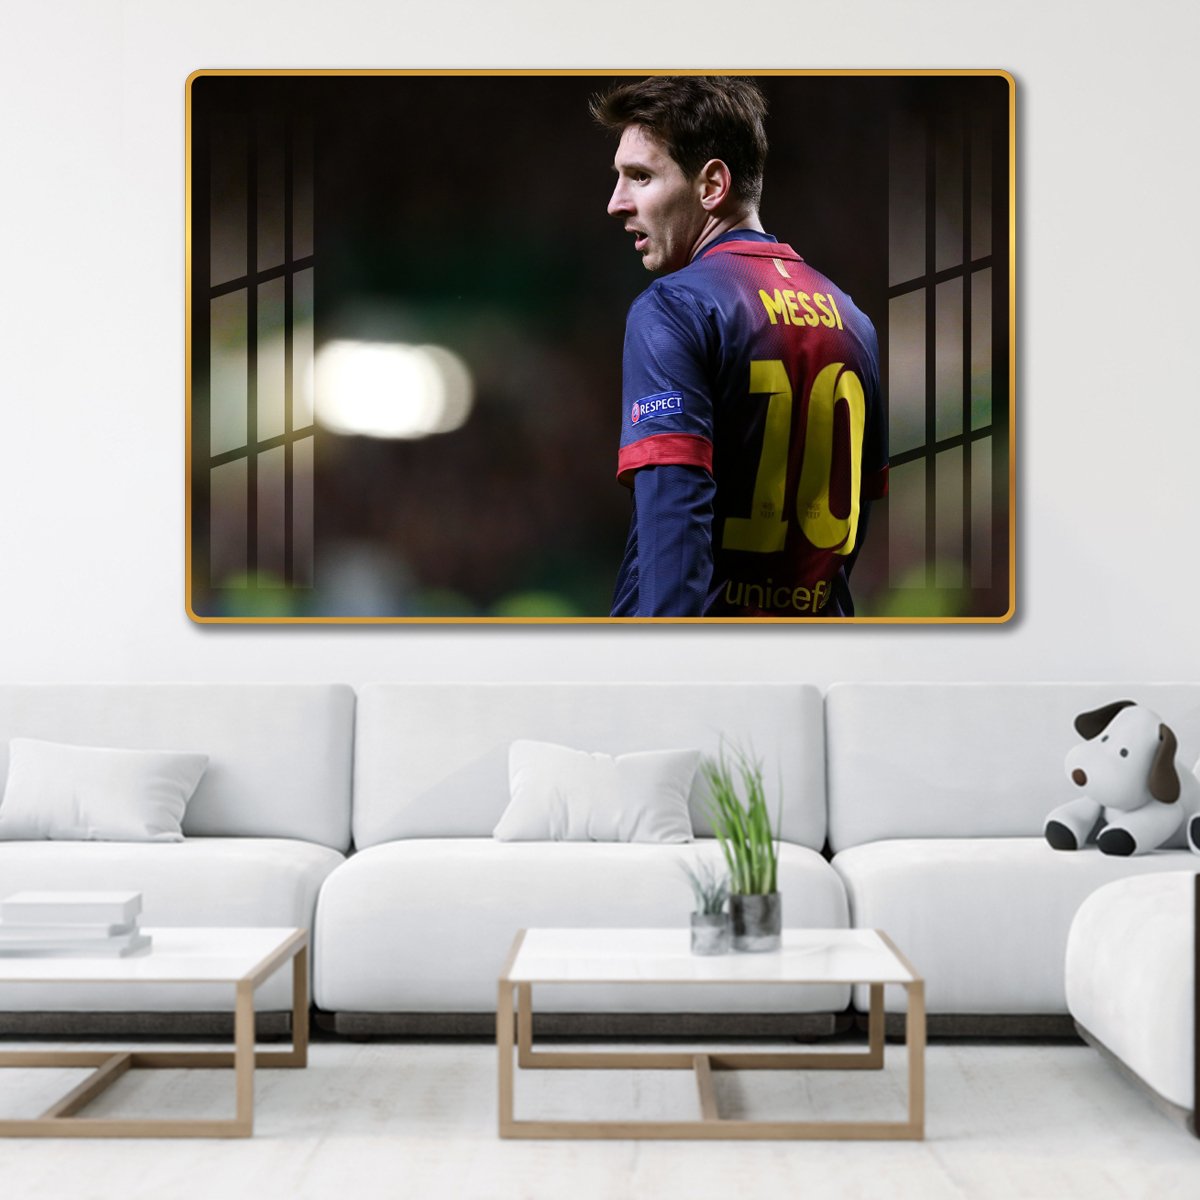 Tranh treo tường cầu thủ Messi 9